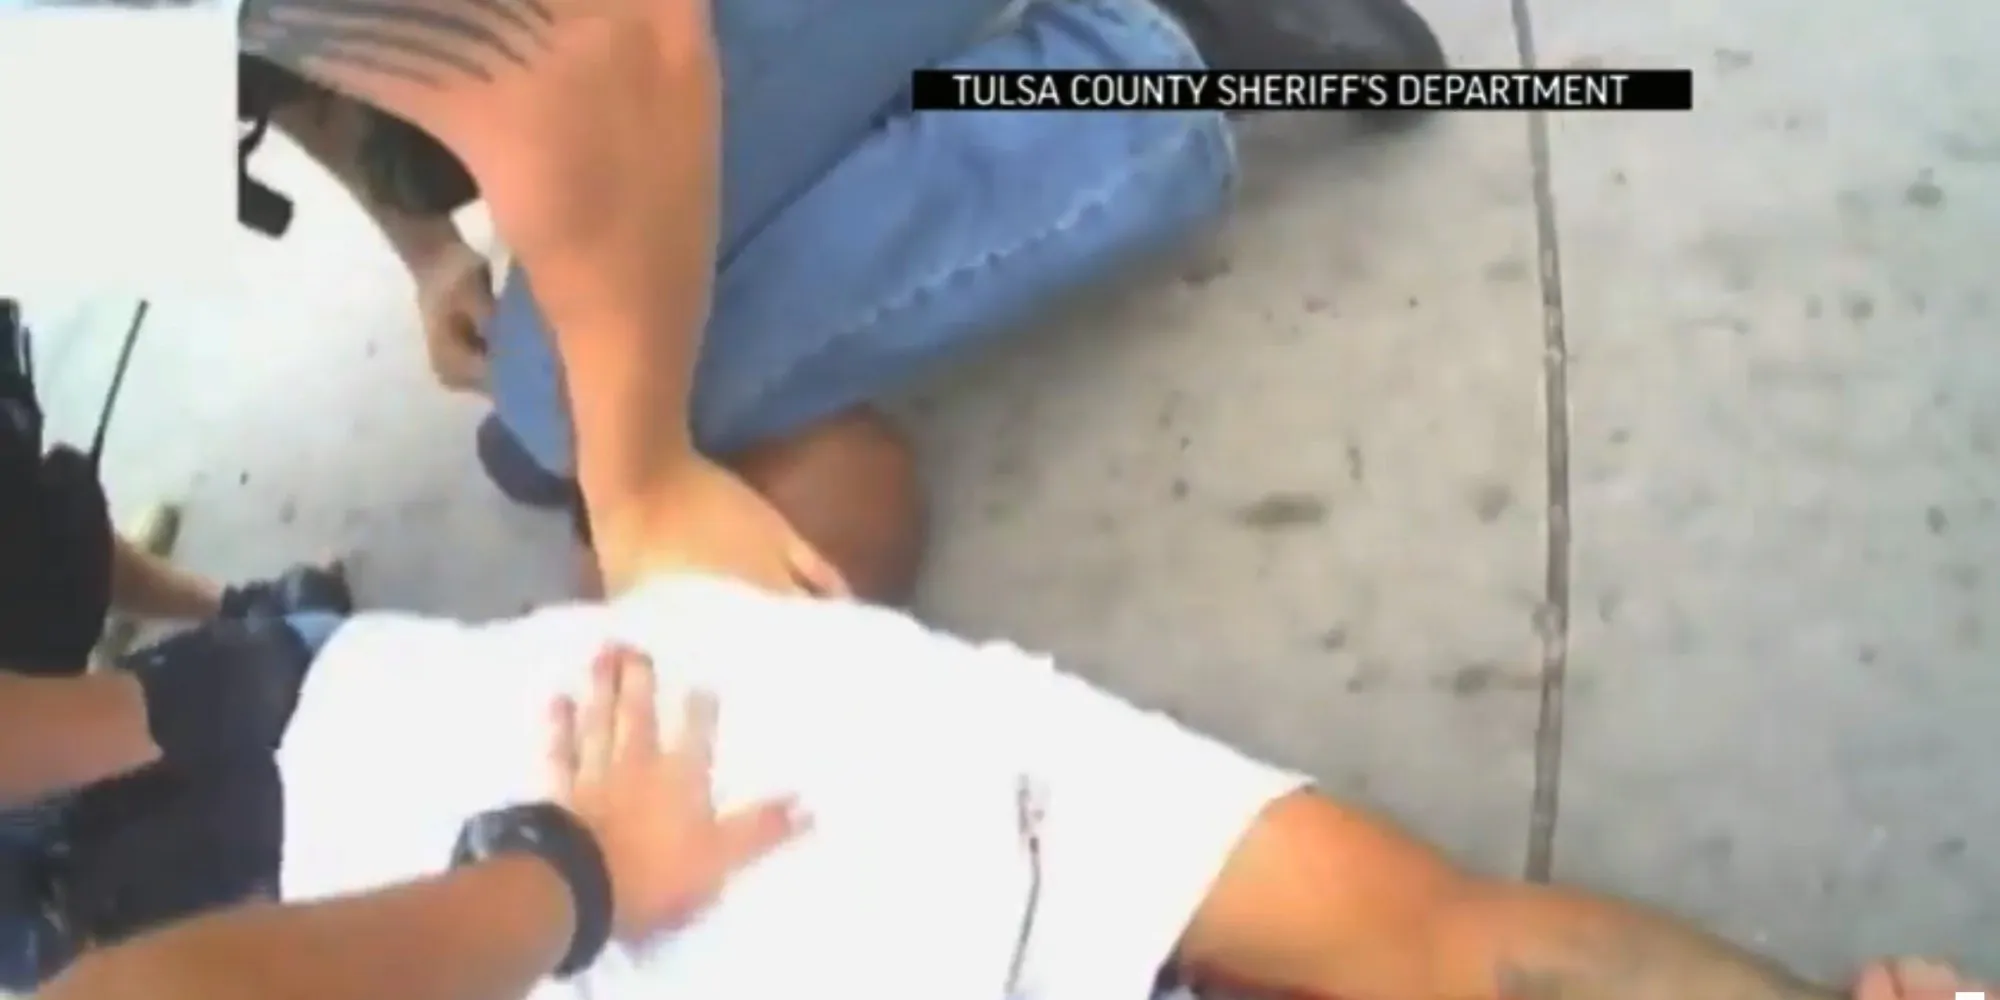 detay vice sceriffo uccide nero in oklahoma era disarmato e immobilizzato nelle immagini dice di prendere il taser poi spara